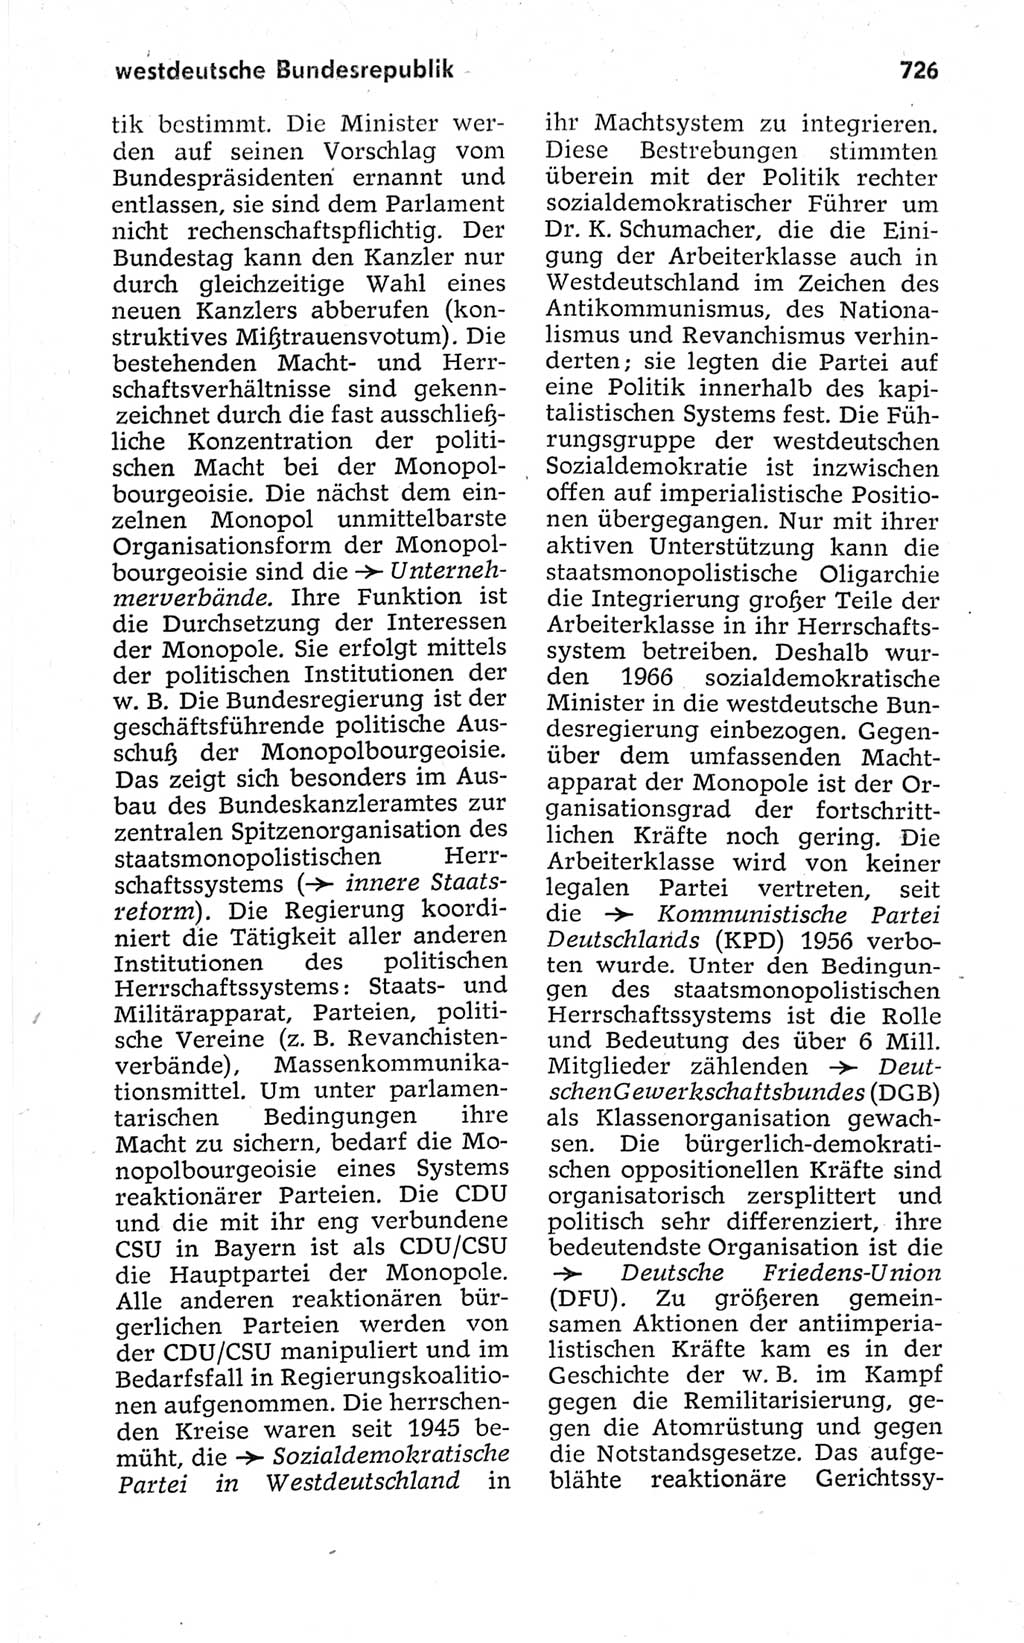 Kleines politisches Wörterbuch [Deutsche Demokratische Republik (DDR)] 1967, Seite 726 (Kl. pol. Wb. DDR 1967, S. 726)